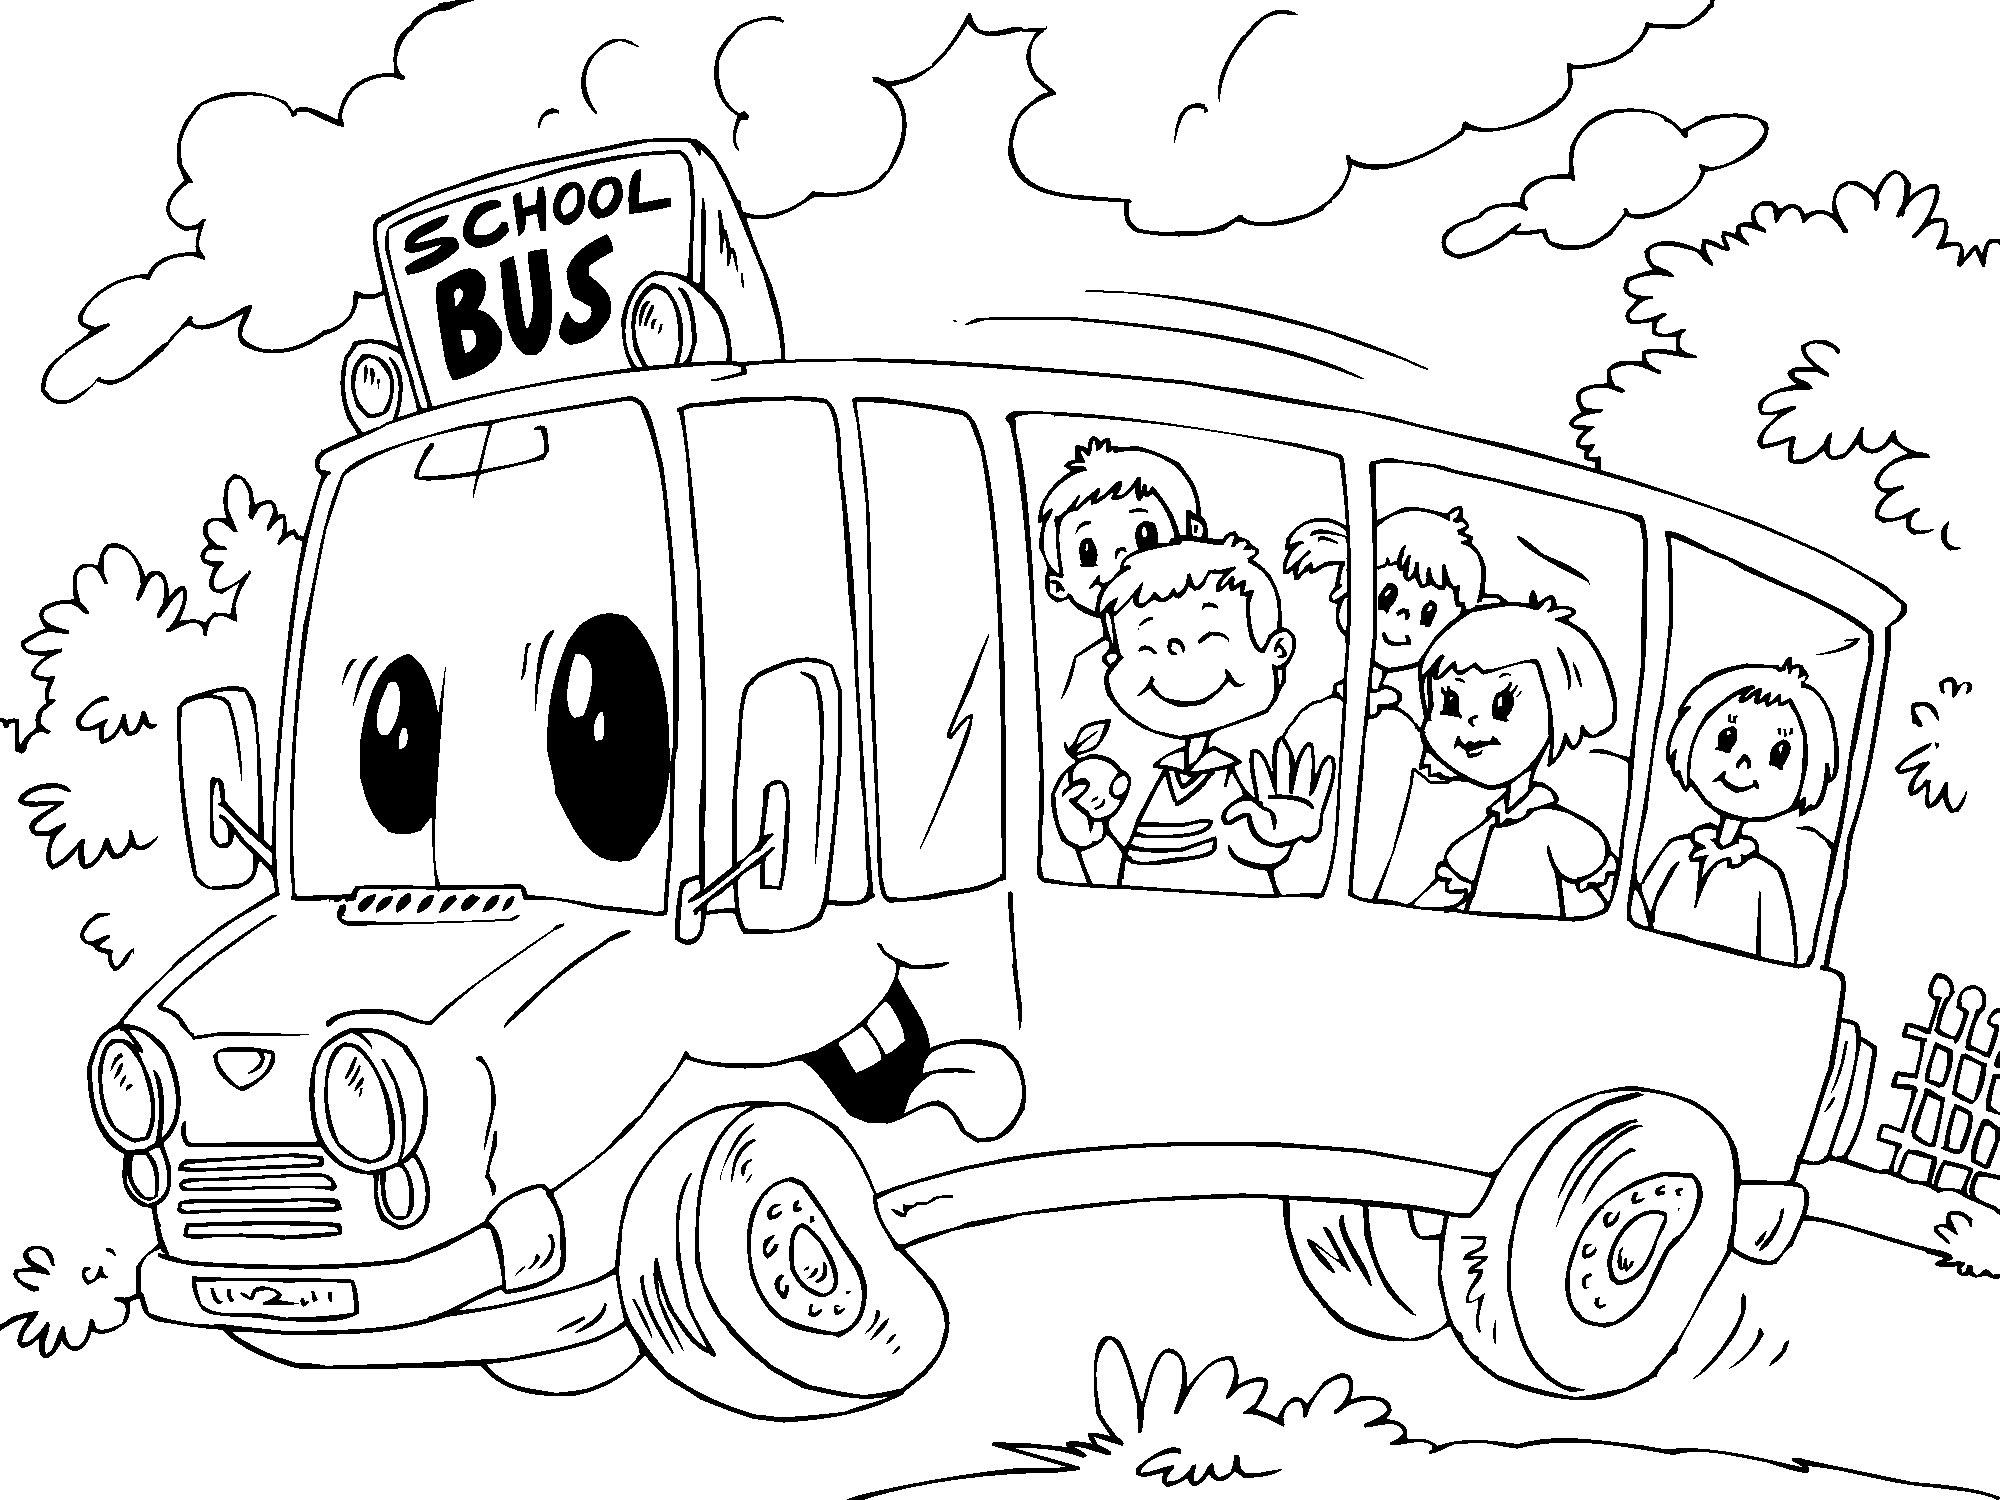 Colorir A Página Com As Crianças Que Viajam No Ônibus Escolar. Cor